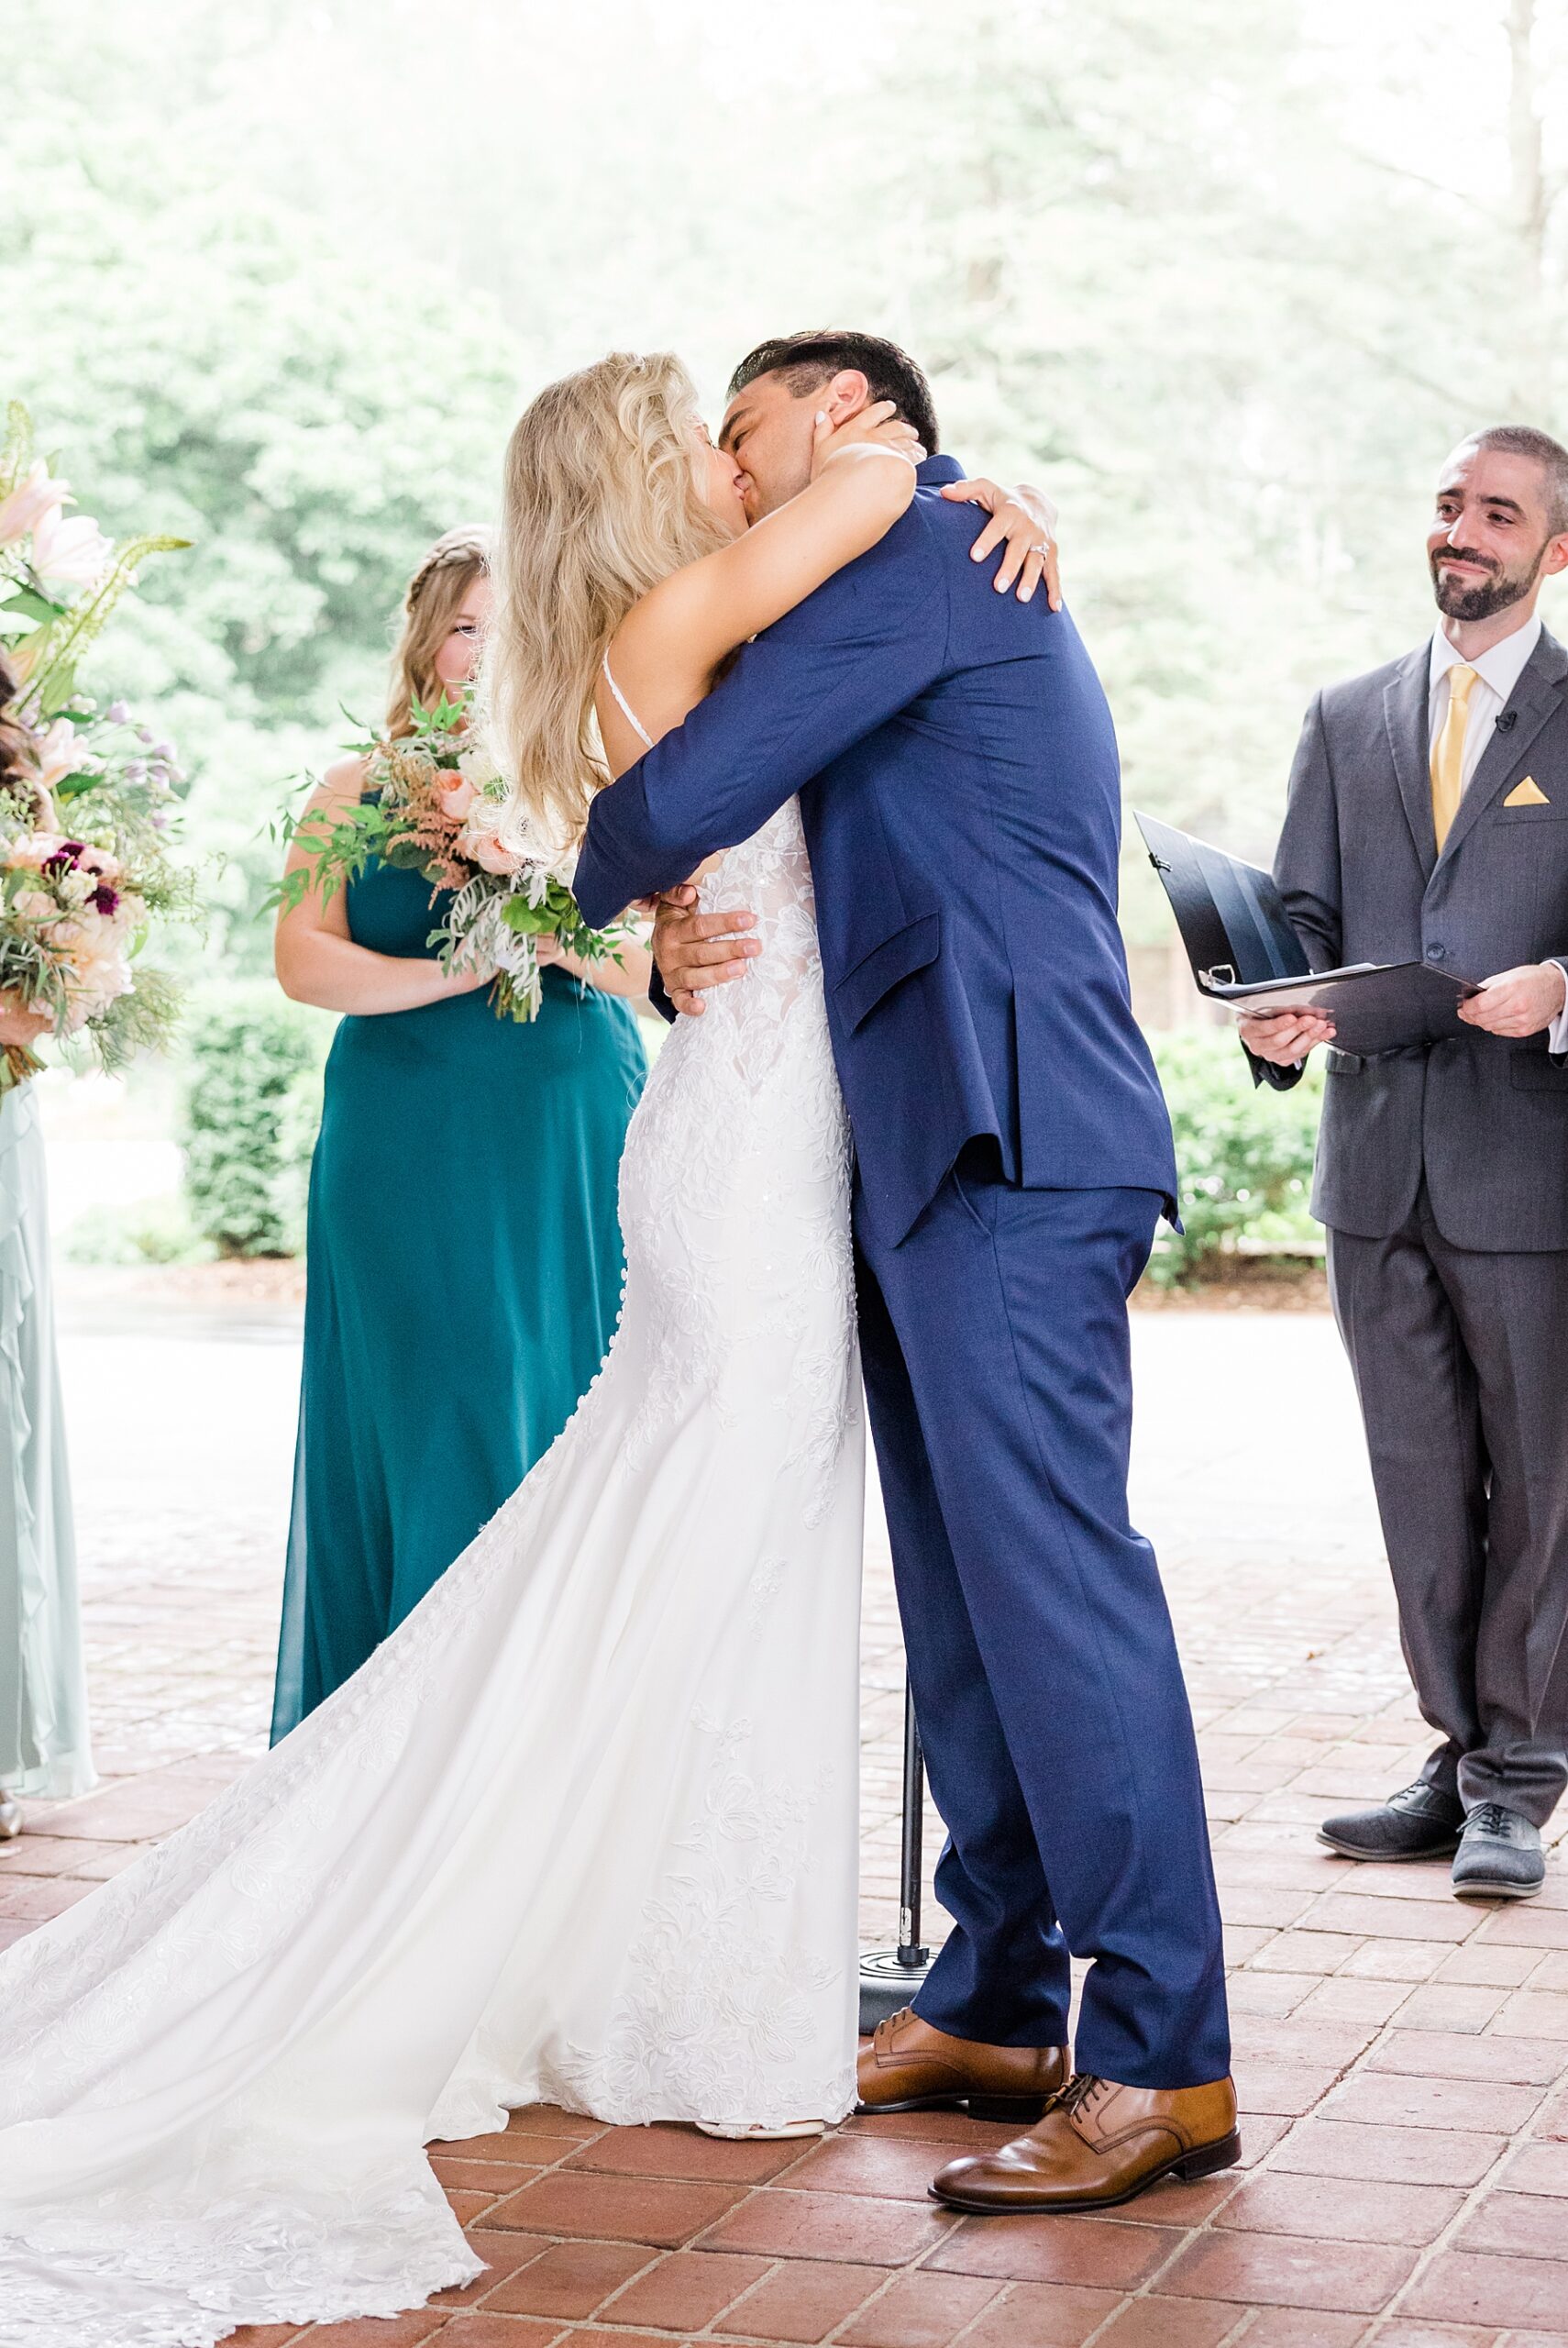 newlyweds kiss as wedding ceremony